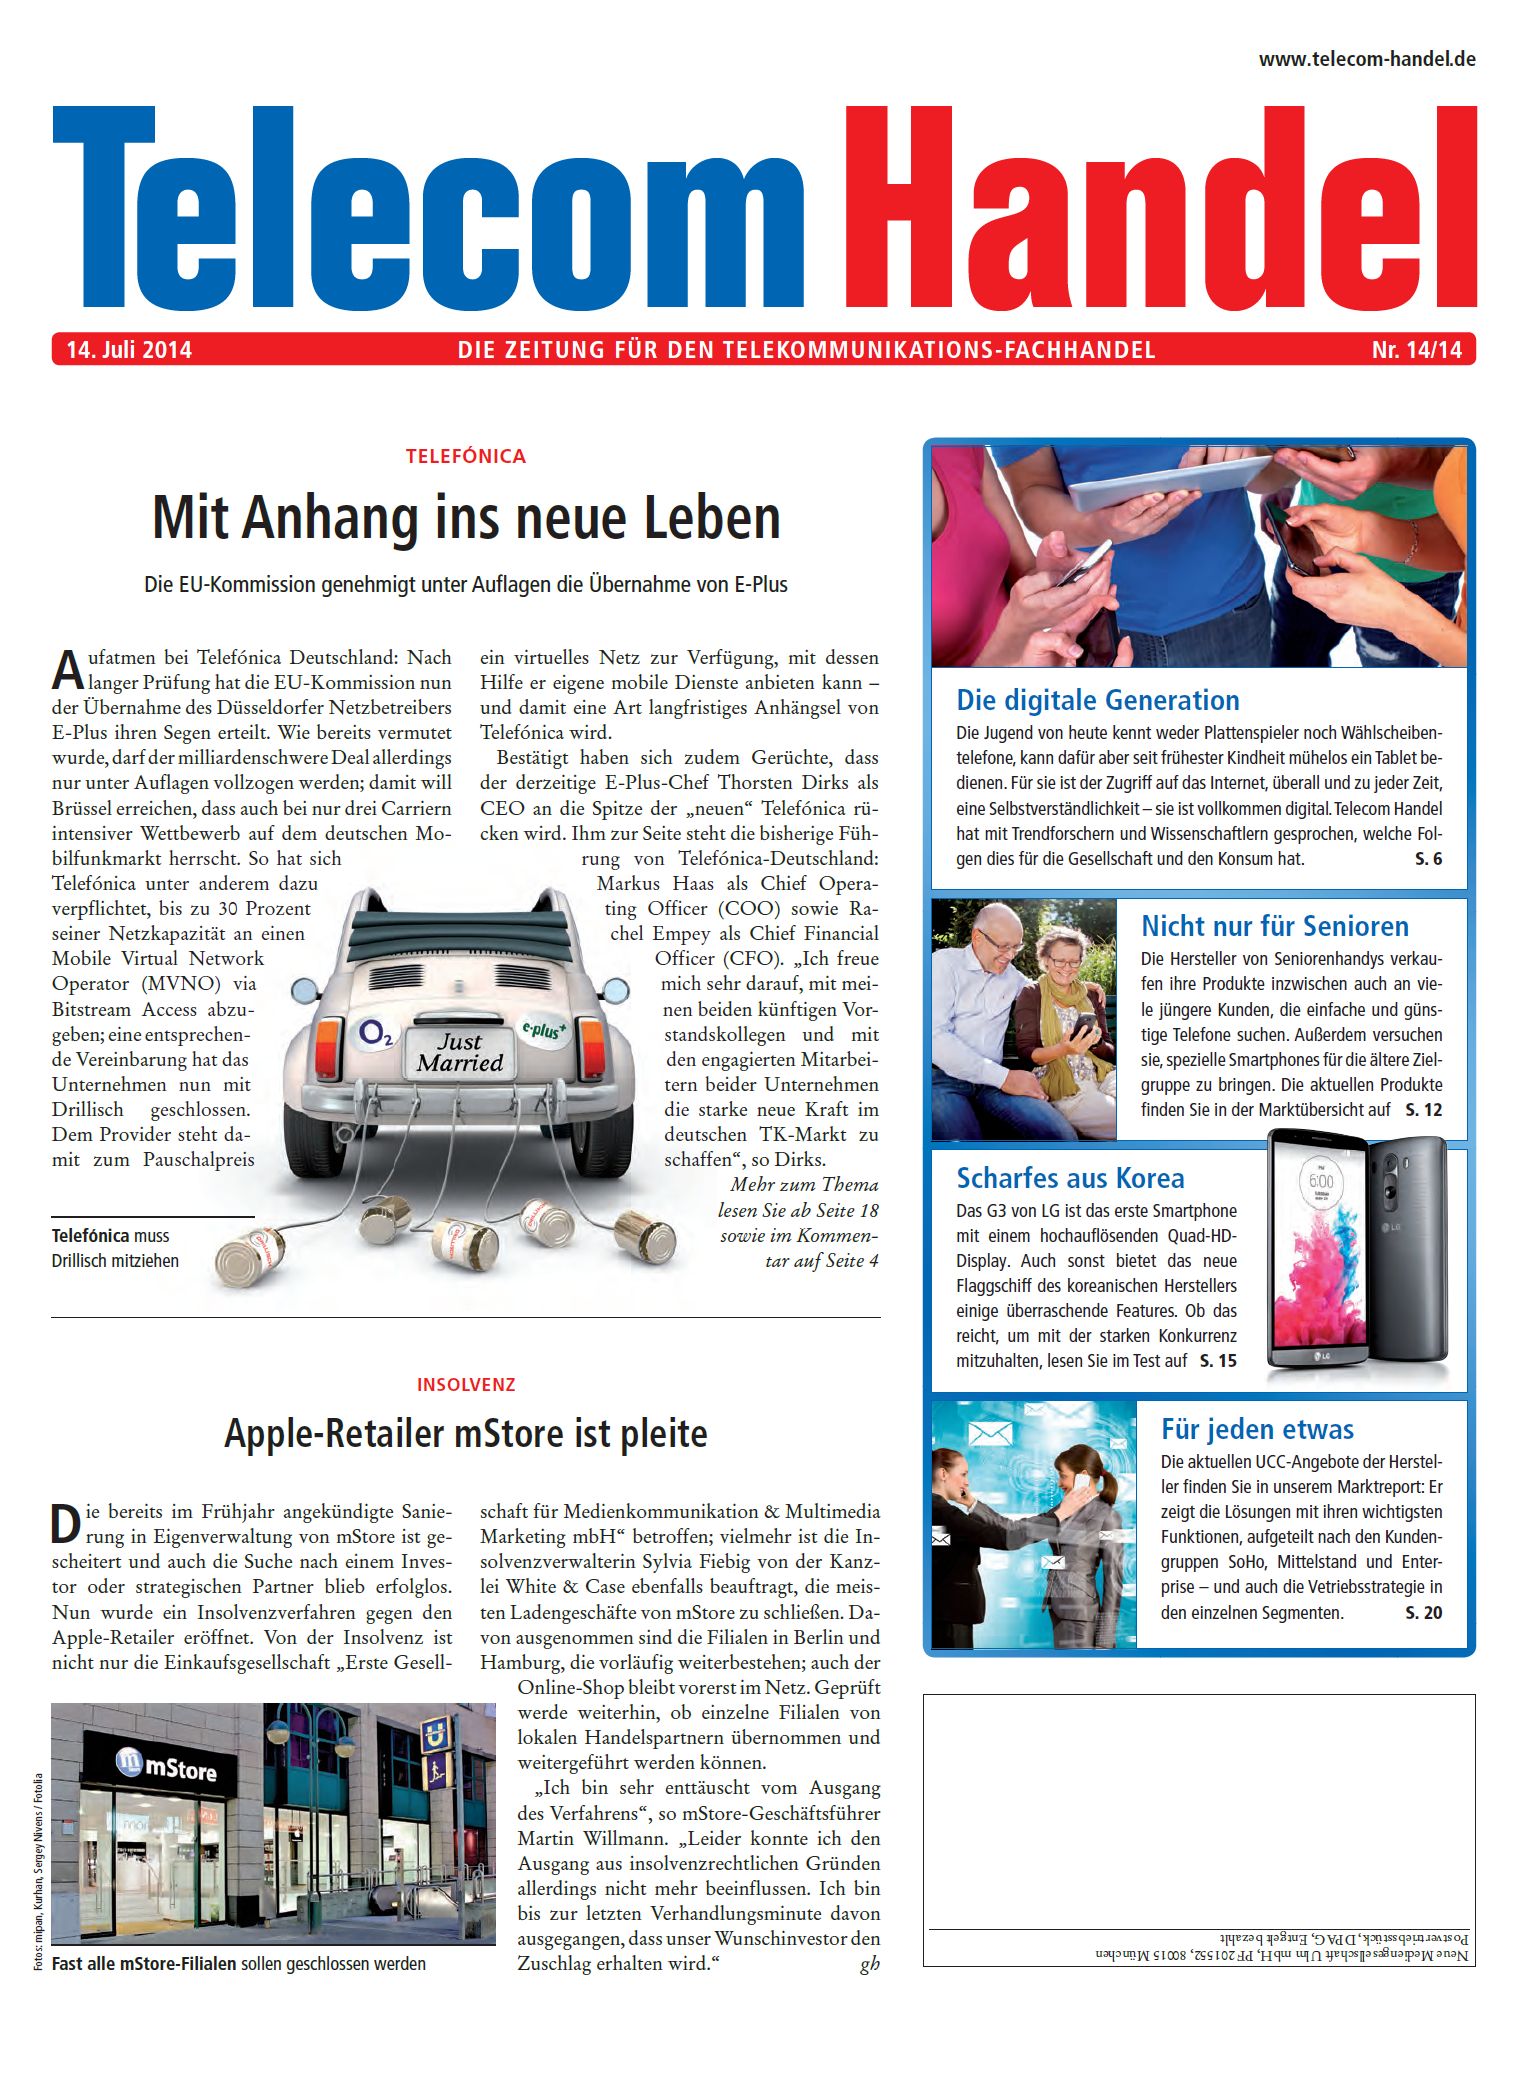 Telecom Handel Ausgabe 14/2014